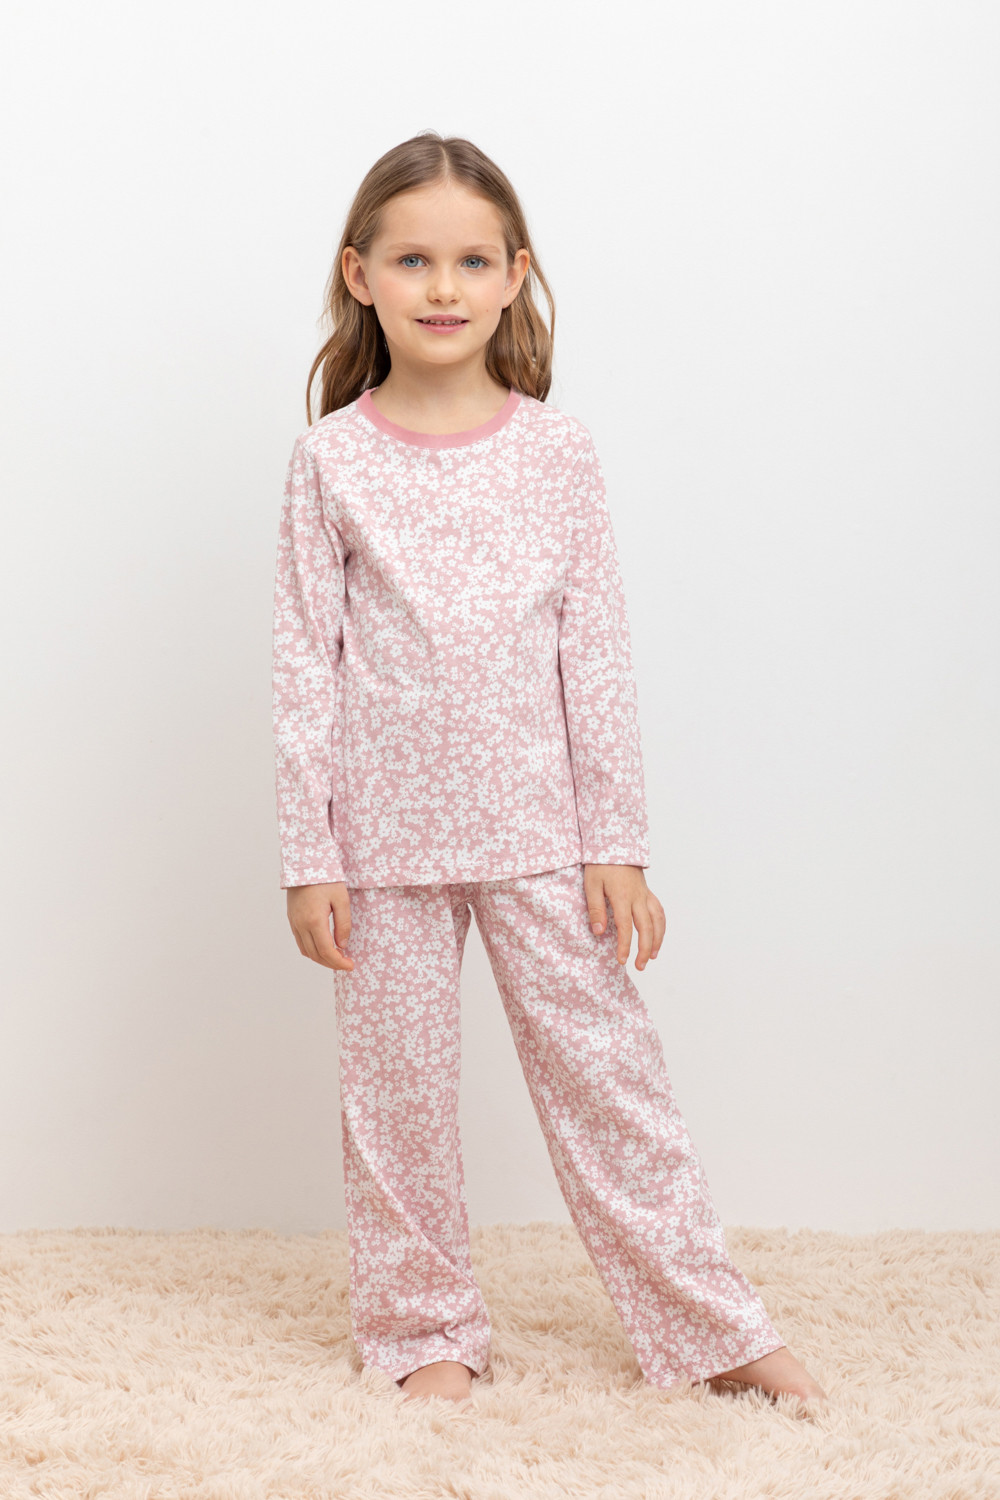 Пижама детская CROCKID МК 1512, М 3055-5, бледно-лиловый, цветочки, 116